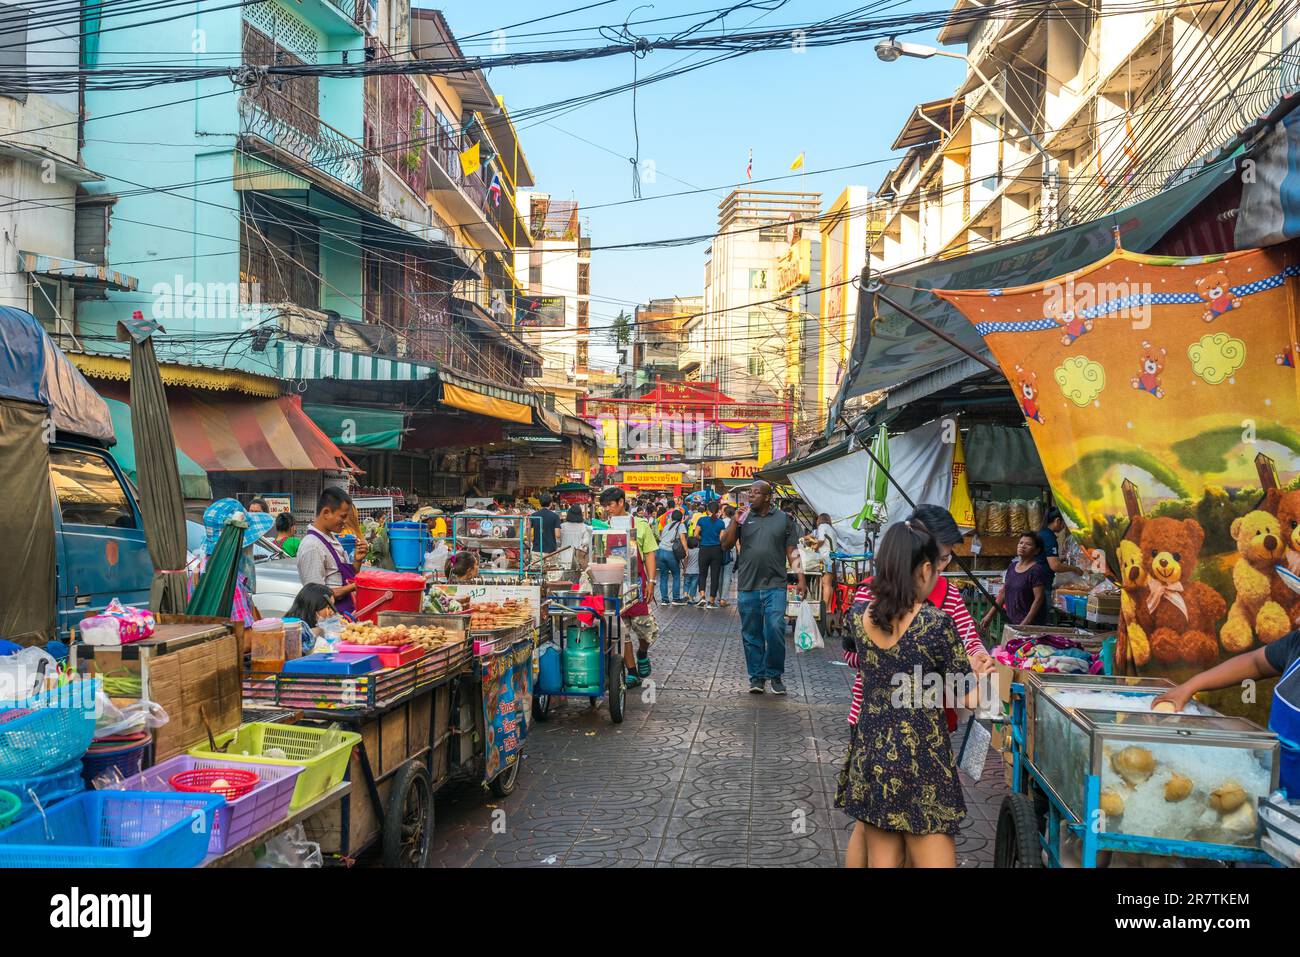 Das Viertel Samphanthawong ist die berühmte, beliebte und geschäftige Chinatown von Bangkok. Zahlreiche Geschäfte, die traditionelle Waren verkaufen Stockfoto